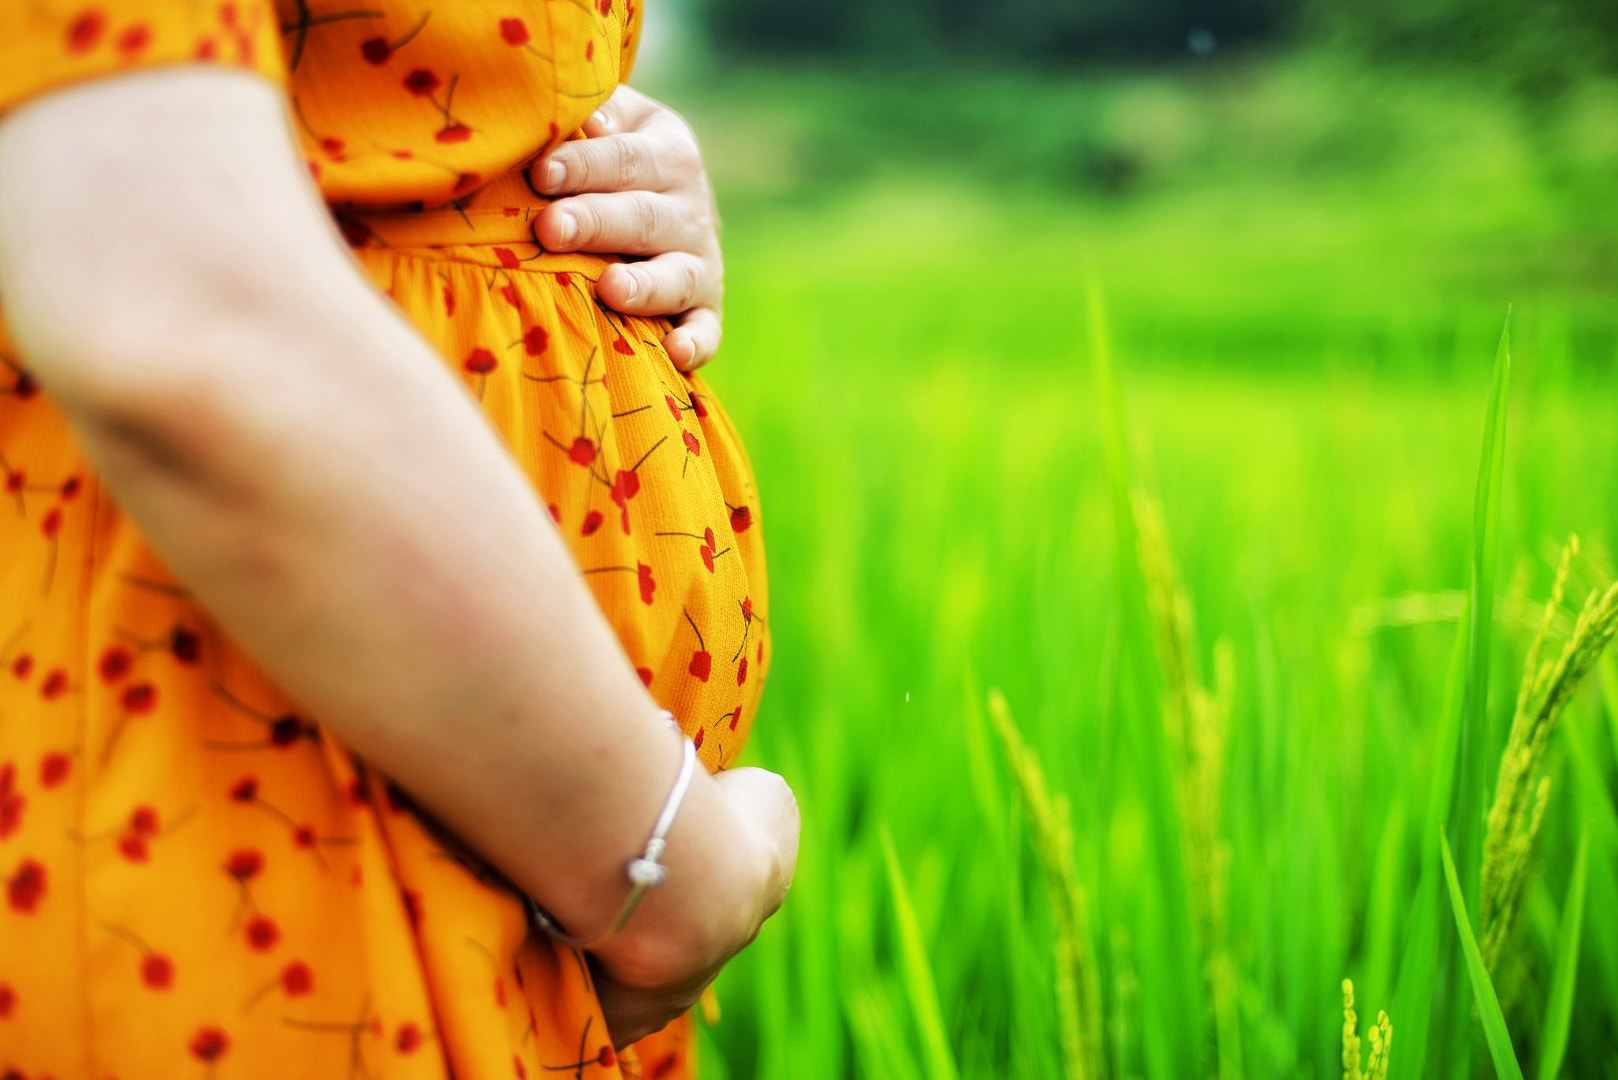 第九个月怀孕 库存图片. 图片 包括有 腹部, 健康, 妈妈, 成人, 聚会所, 正横, 反空气污染的, 藏品 - 72011025